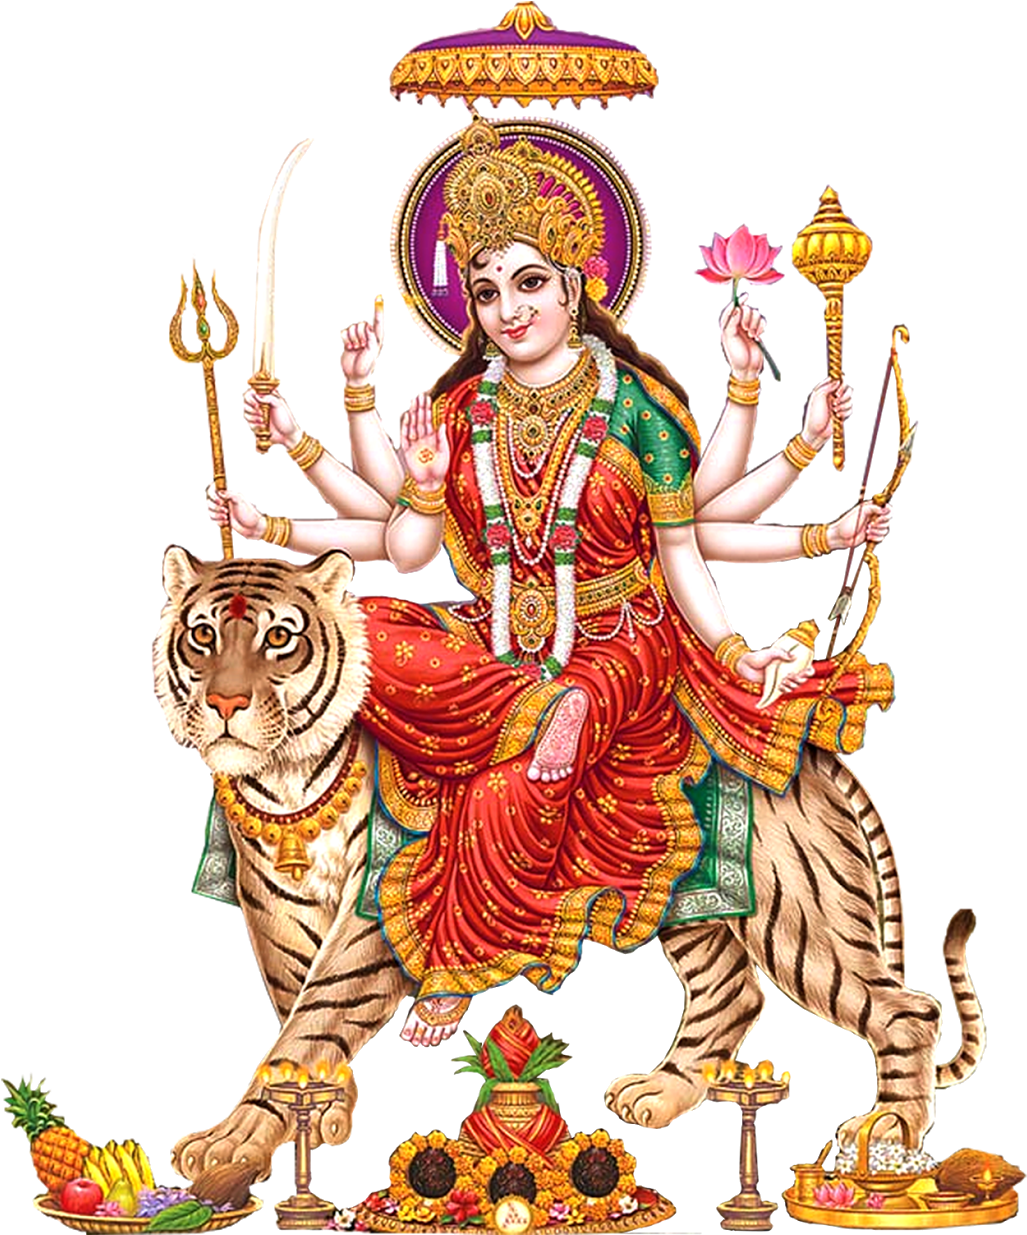 Png Images Of Indian Gods Telugu Vijayadashami Wishes - Maa Durga Images Pn...